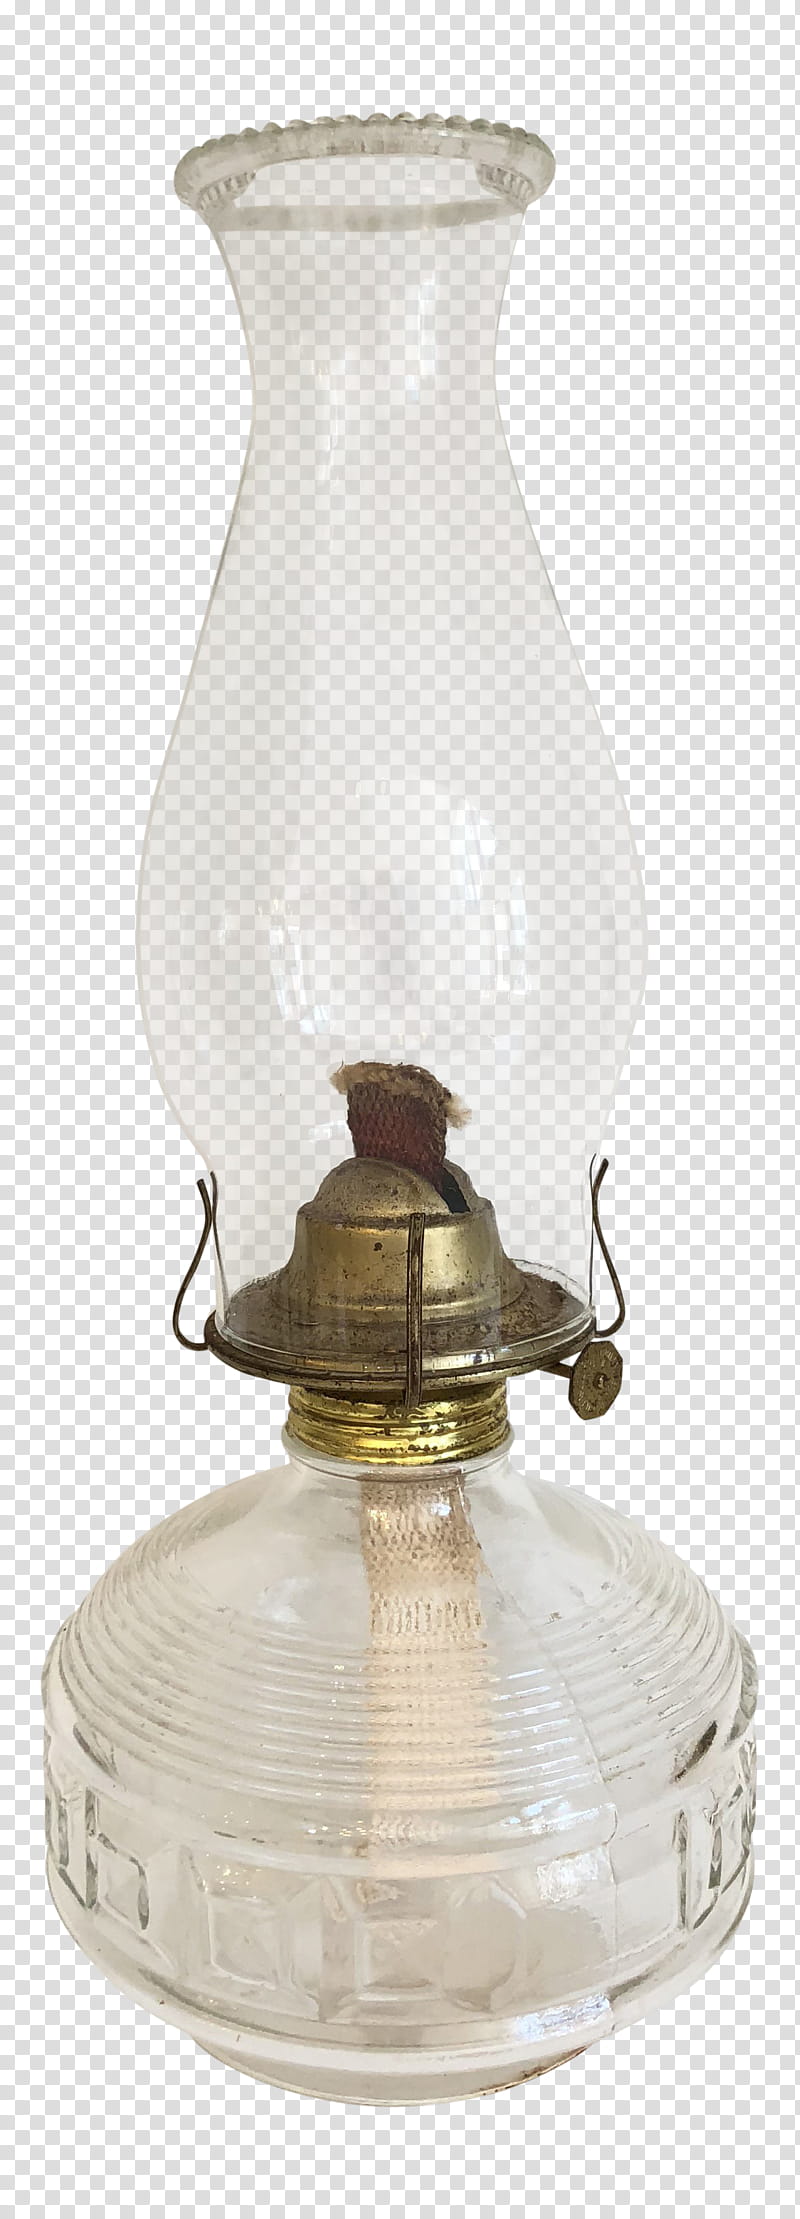 Light Bulb, Kerosene Lamp, Lighting, Electric Light, Glass, Table, Brenner, Fuel transparent background PNG clipart